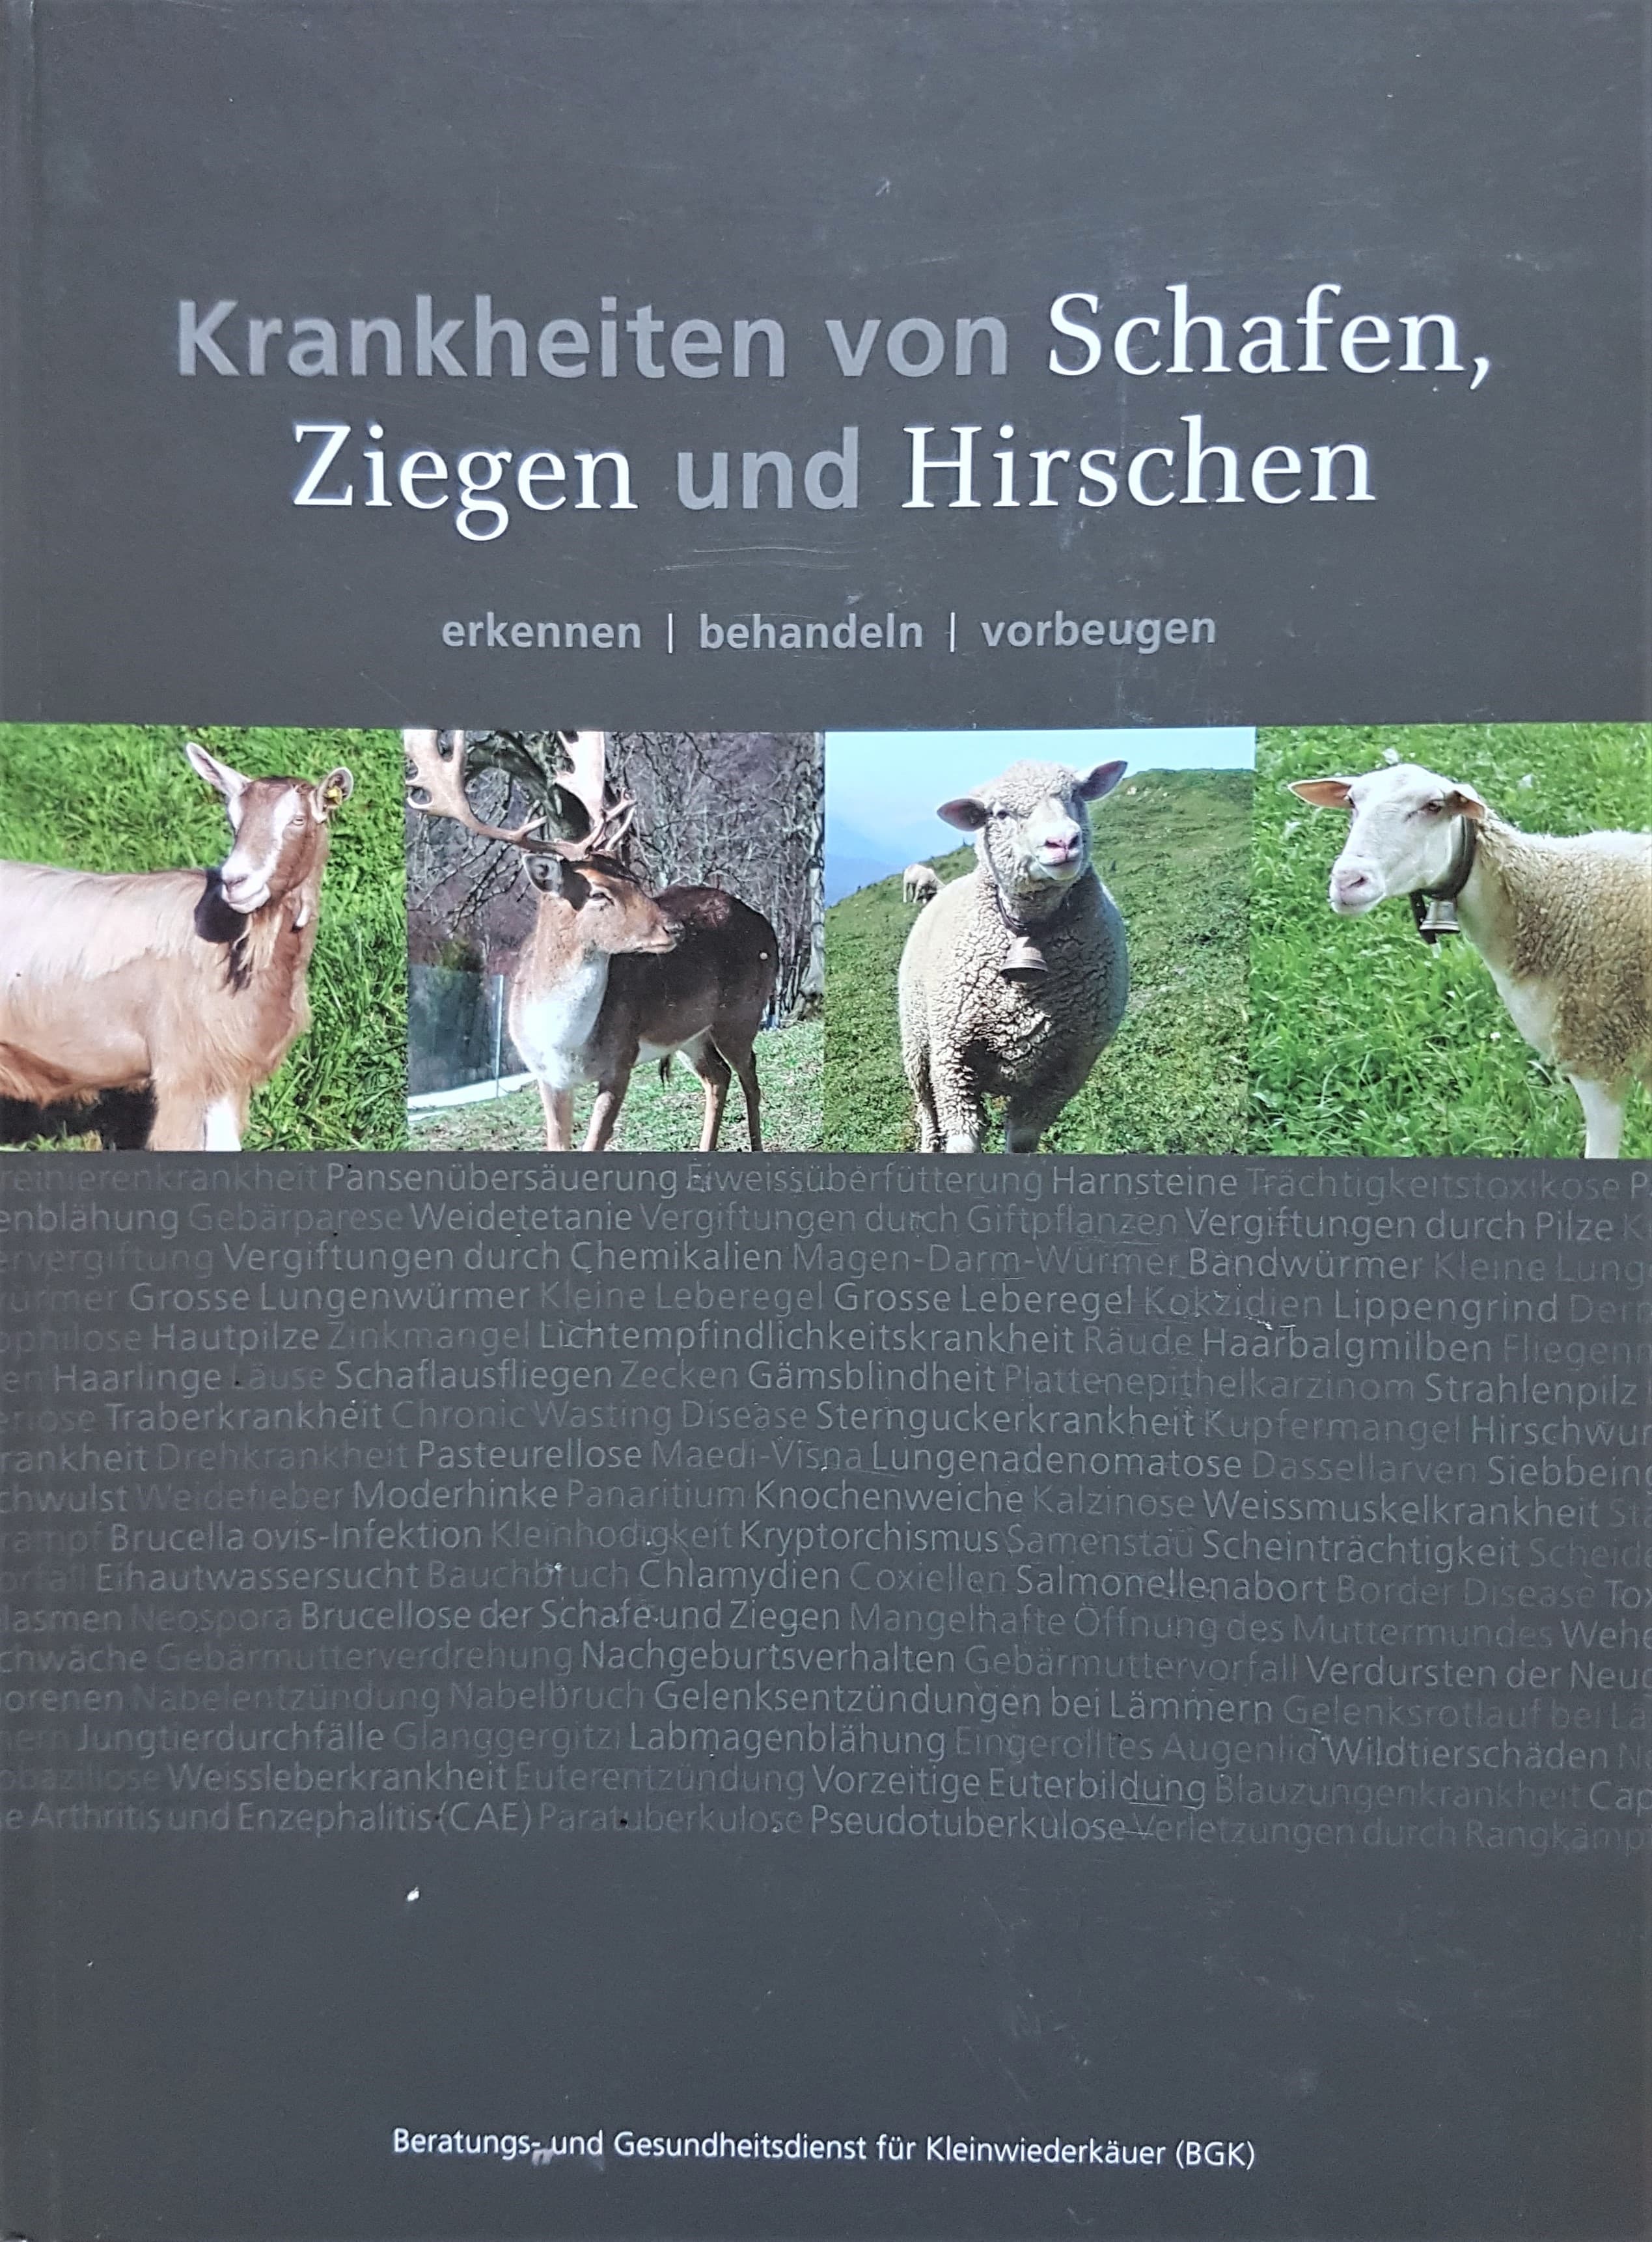 BGK-Buch: Krankheiten von Schafen, Ziegen und Hirschen